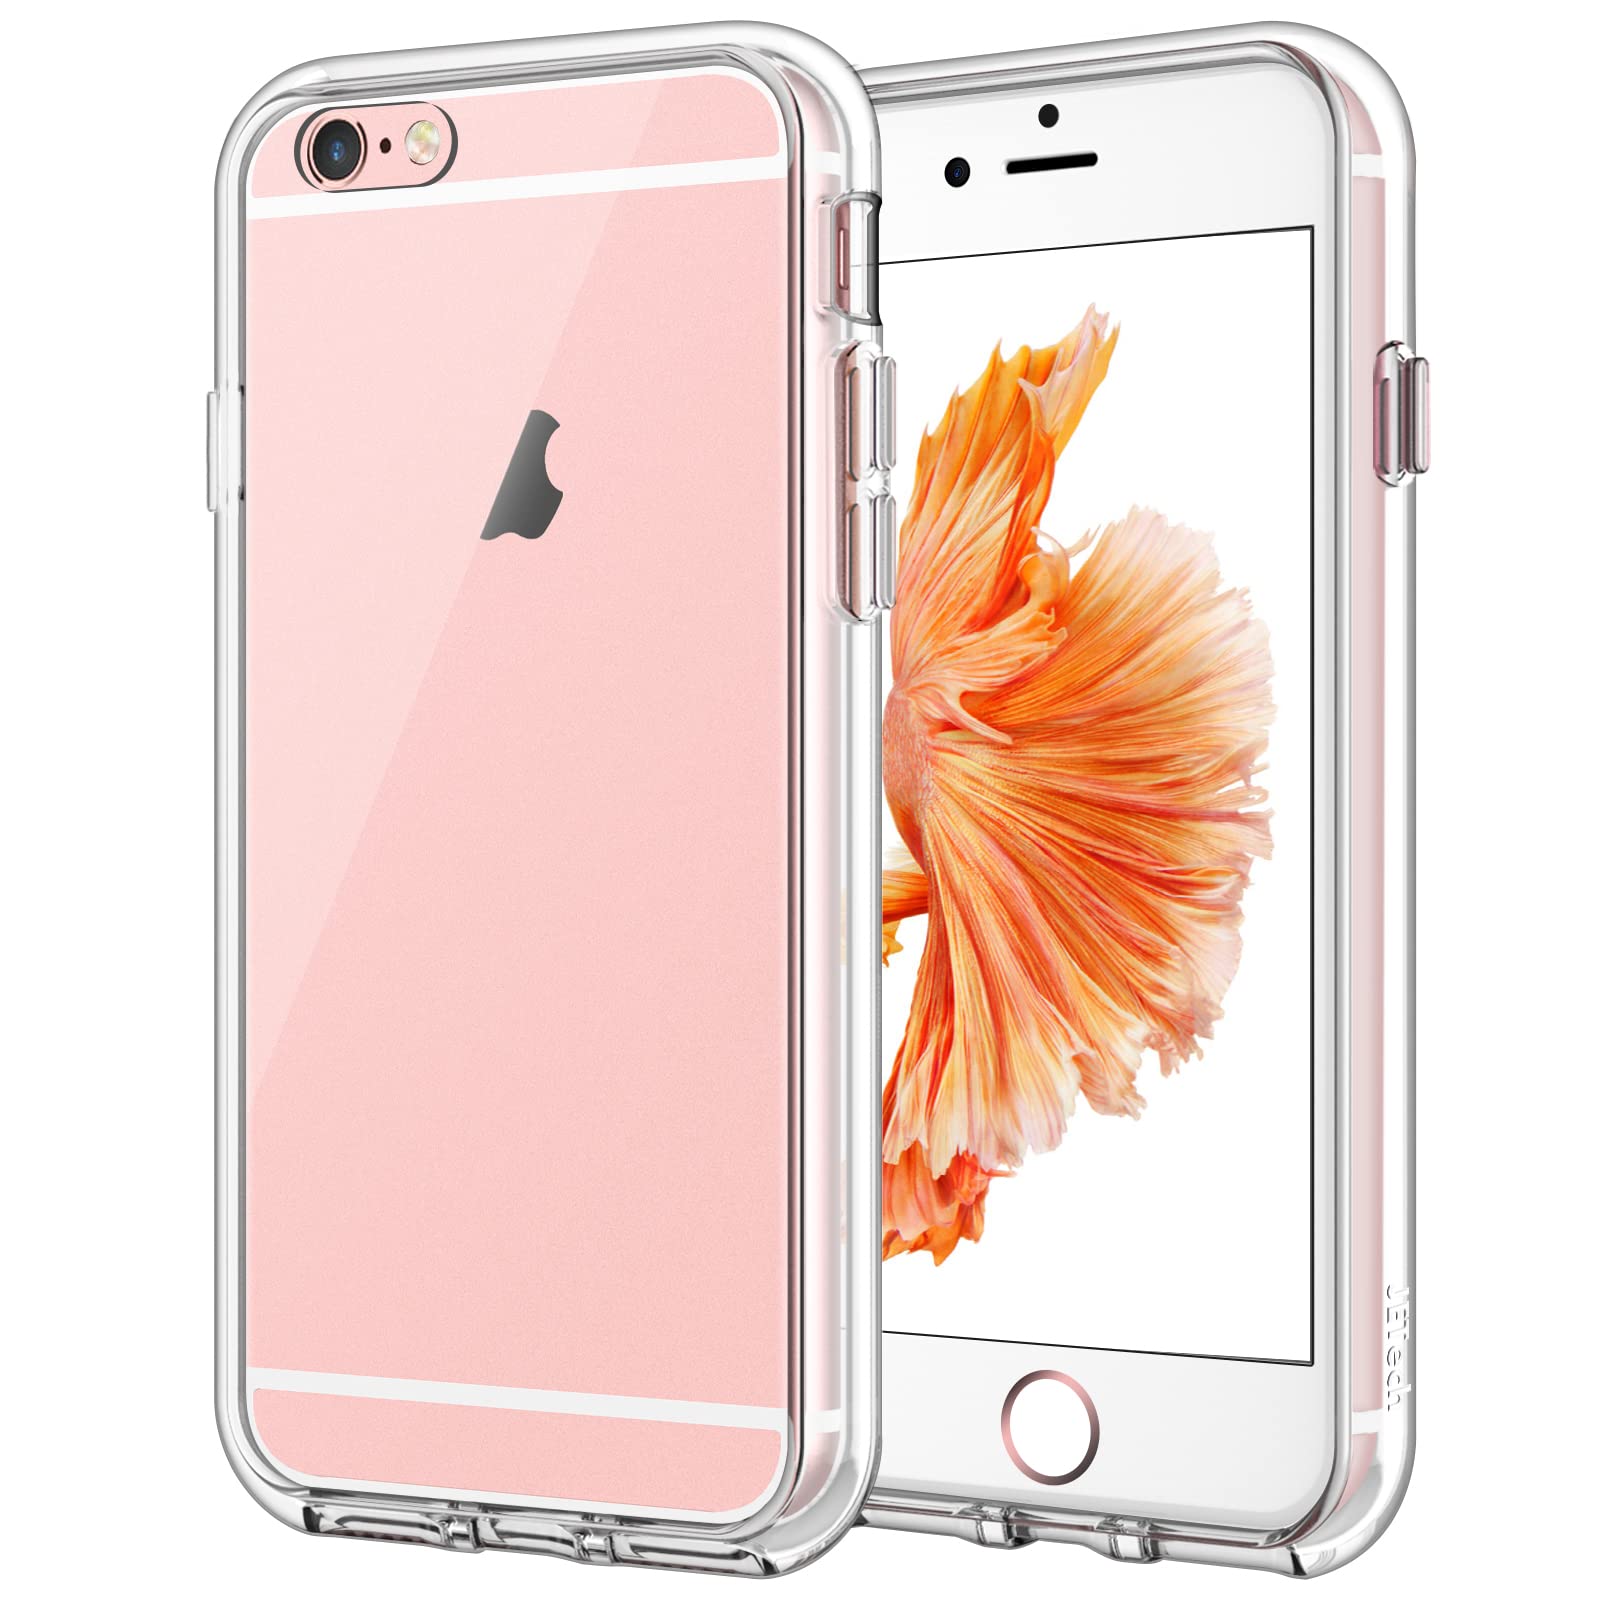 Giá iPhone 6s Plus màu vàng hồng bị đẩy lên 40 triệu đồng - Báo Quảng Ninh  điện tử